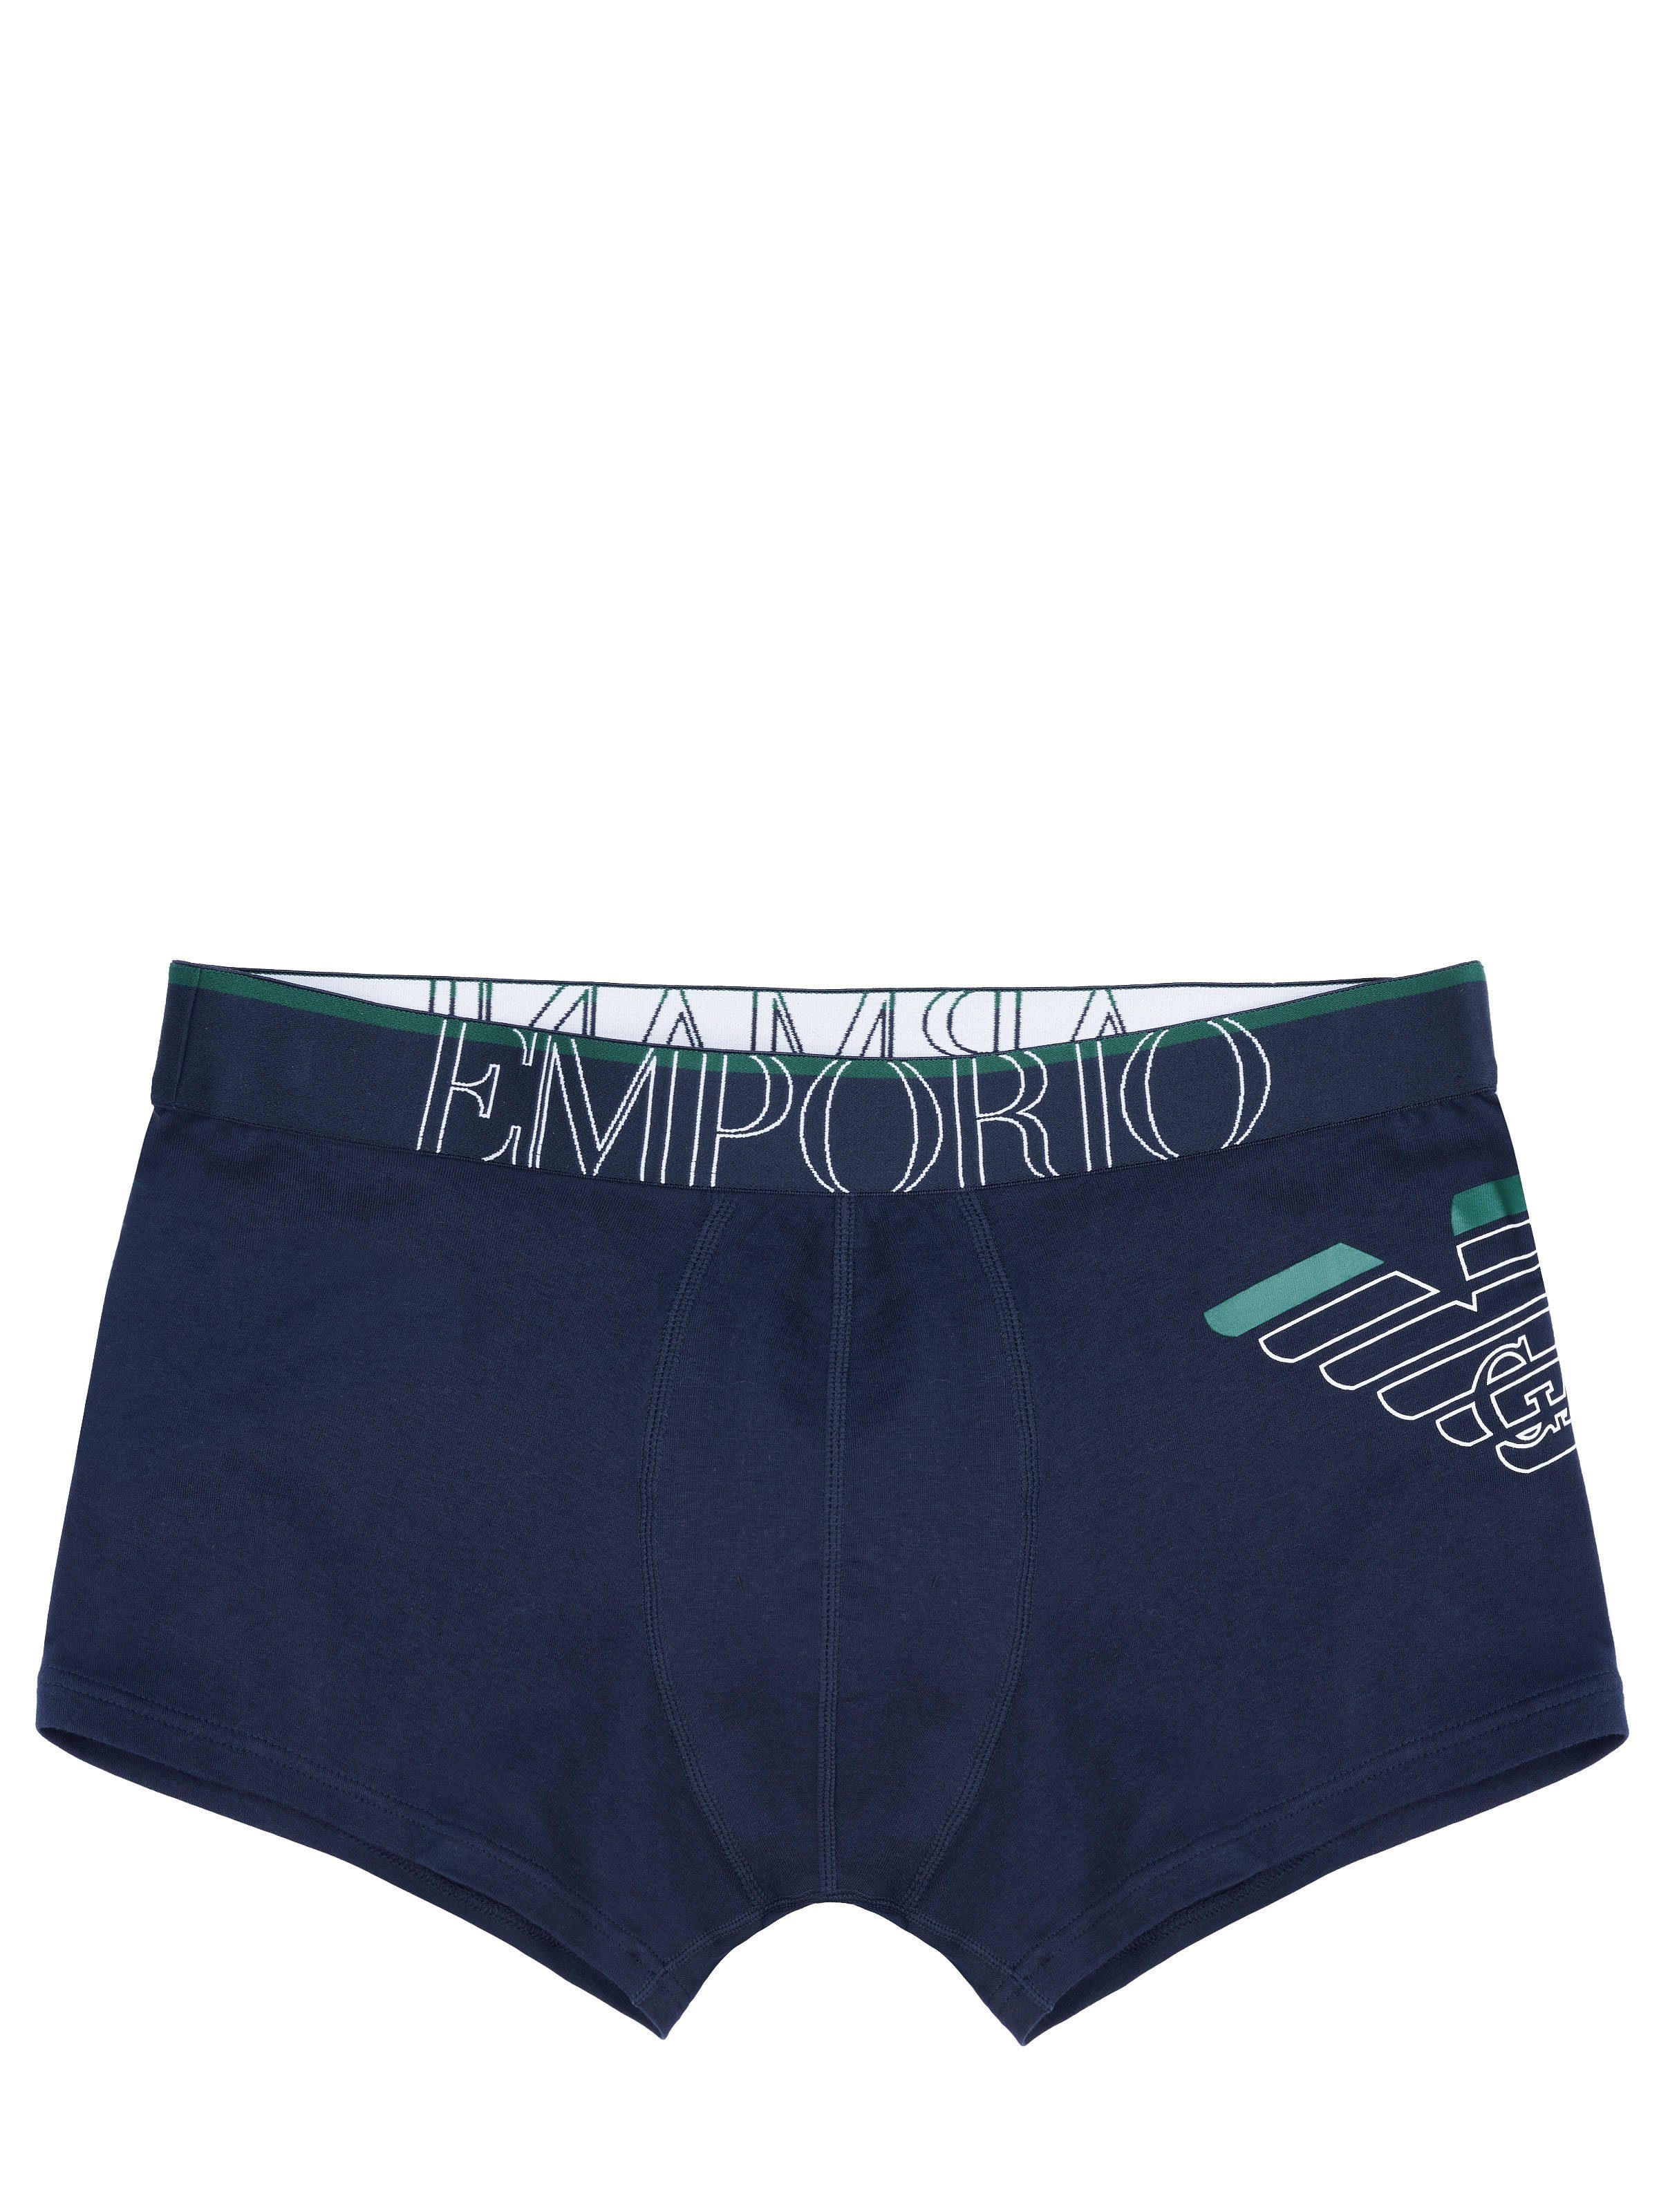 Emporio Armani Boxershorts Emporio Armani Underwear